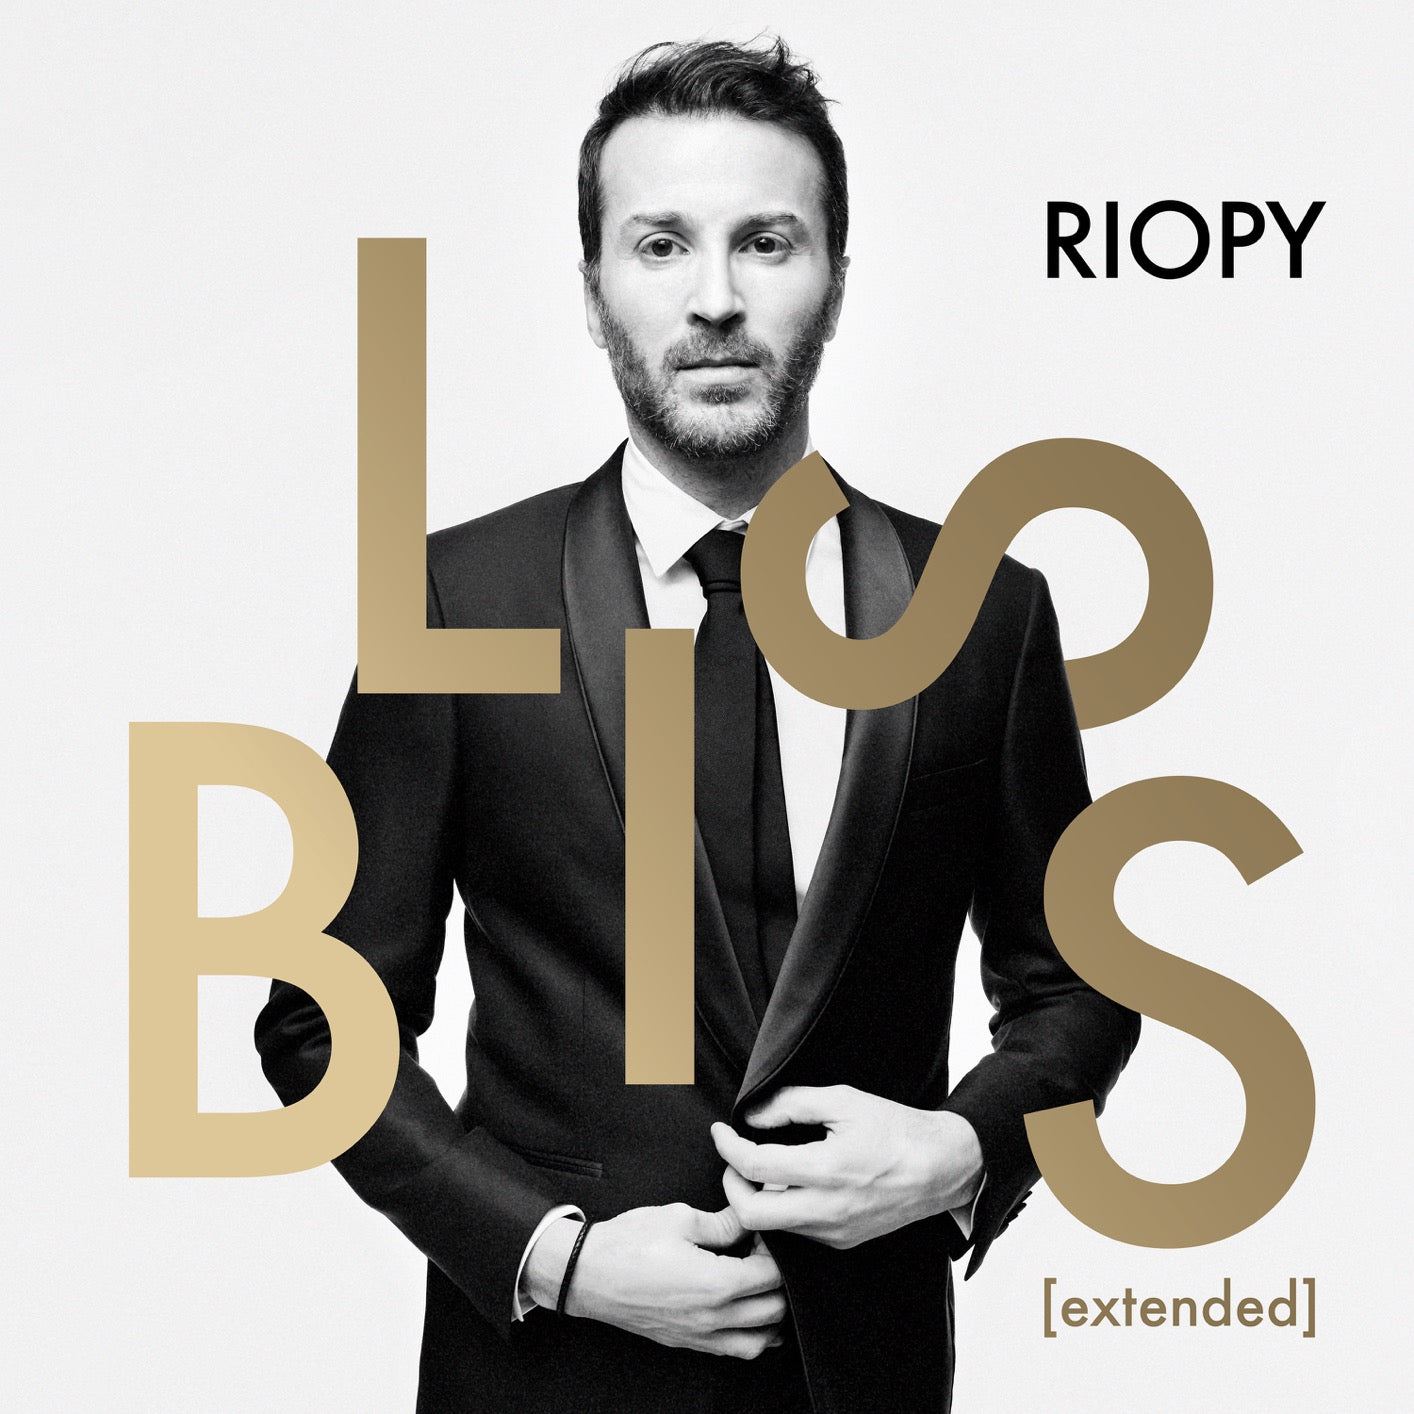 RIOPY's Bliss Extended album